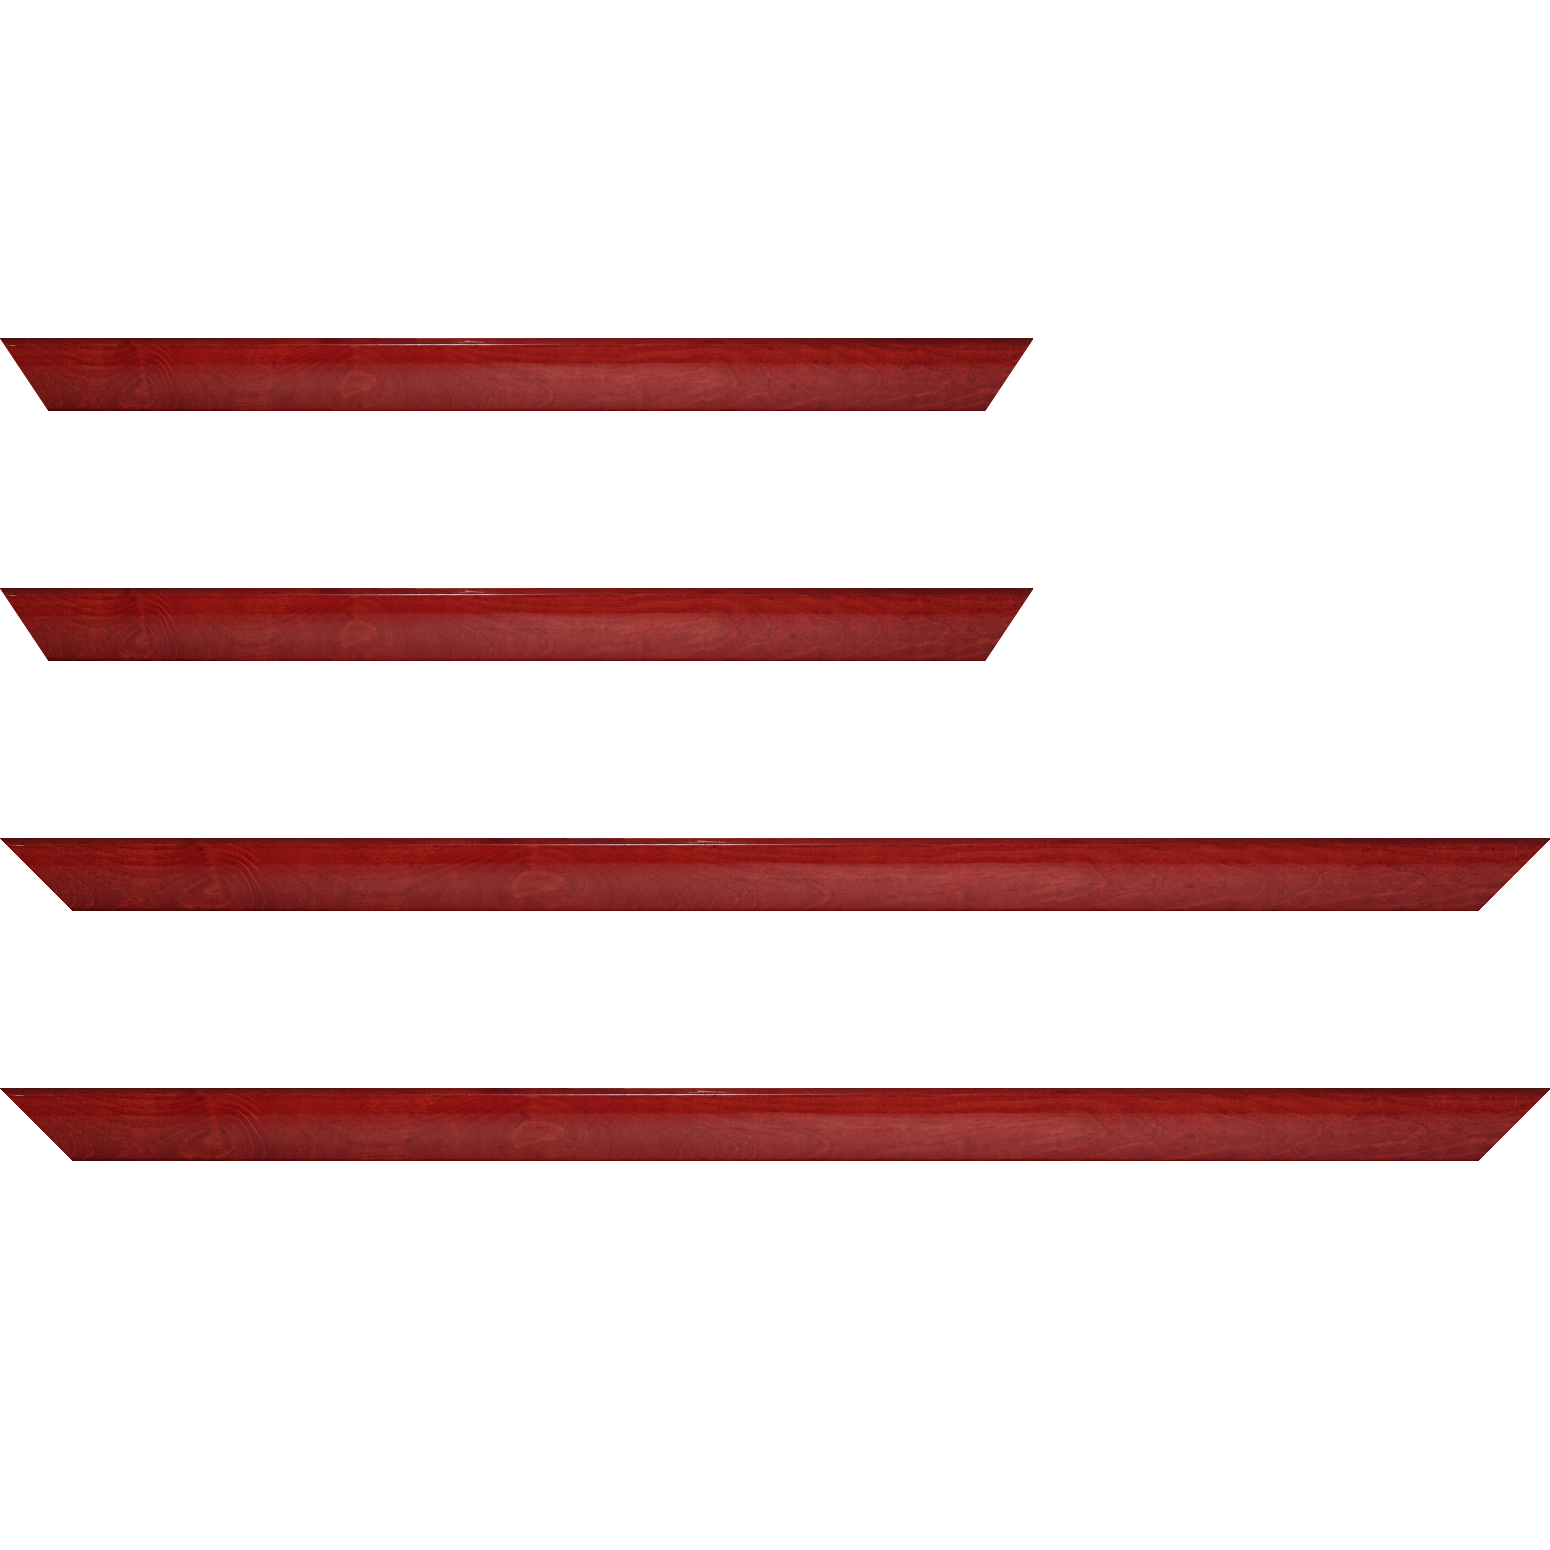 Baguette bois profil arrondi en pente plongeant largeur 2.4cm couleur rouge cerise finition vernis brillant,veine du bois  apparent (pin) , - 18x24